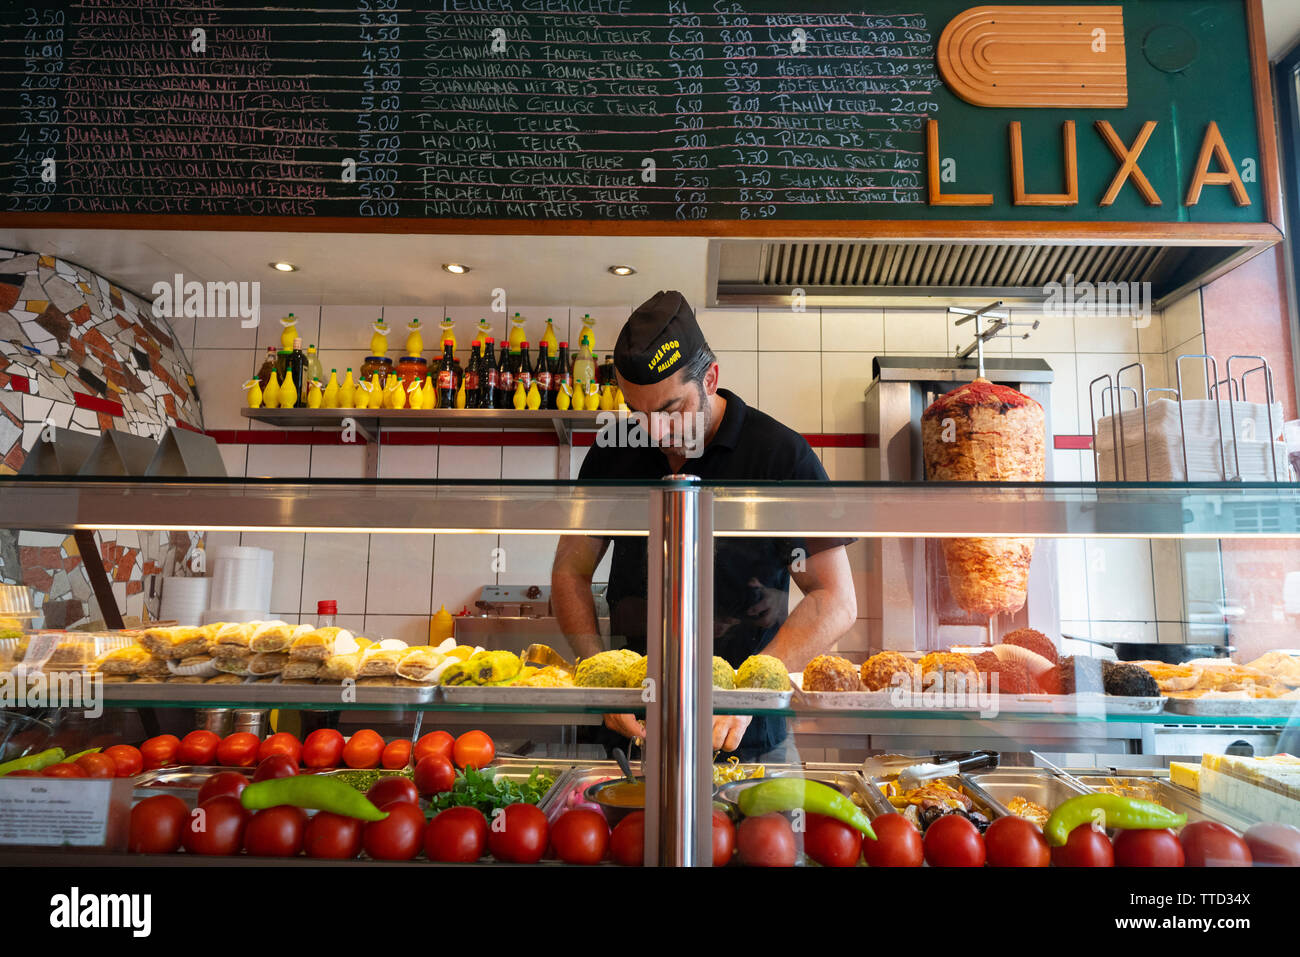 Mann Vorbereitung Schwarma Sandwich an Luxa Restaurant in Mitte, Berlin, Deutschland Stockfoto